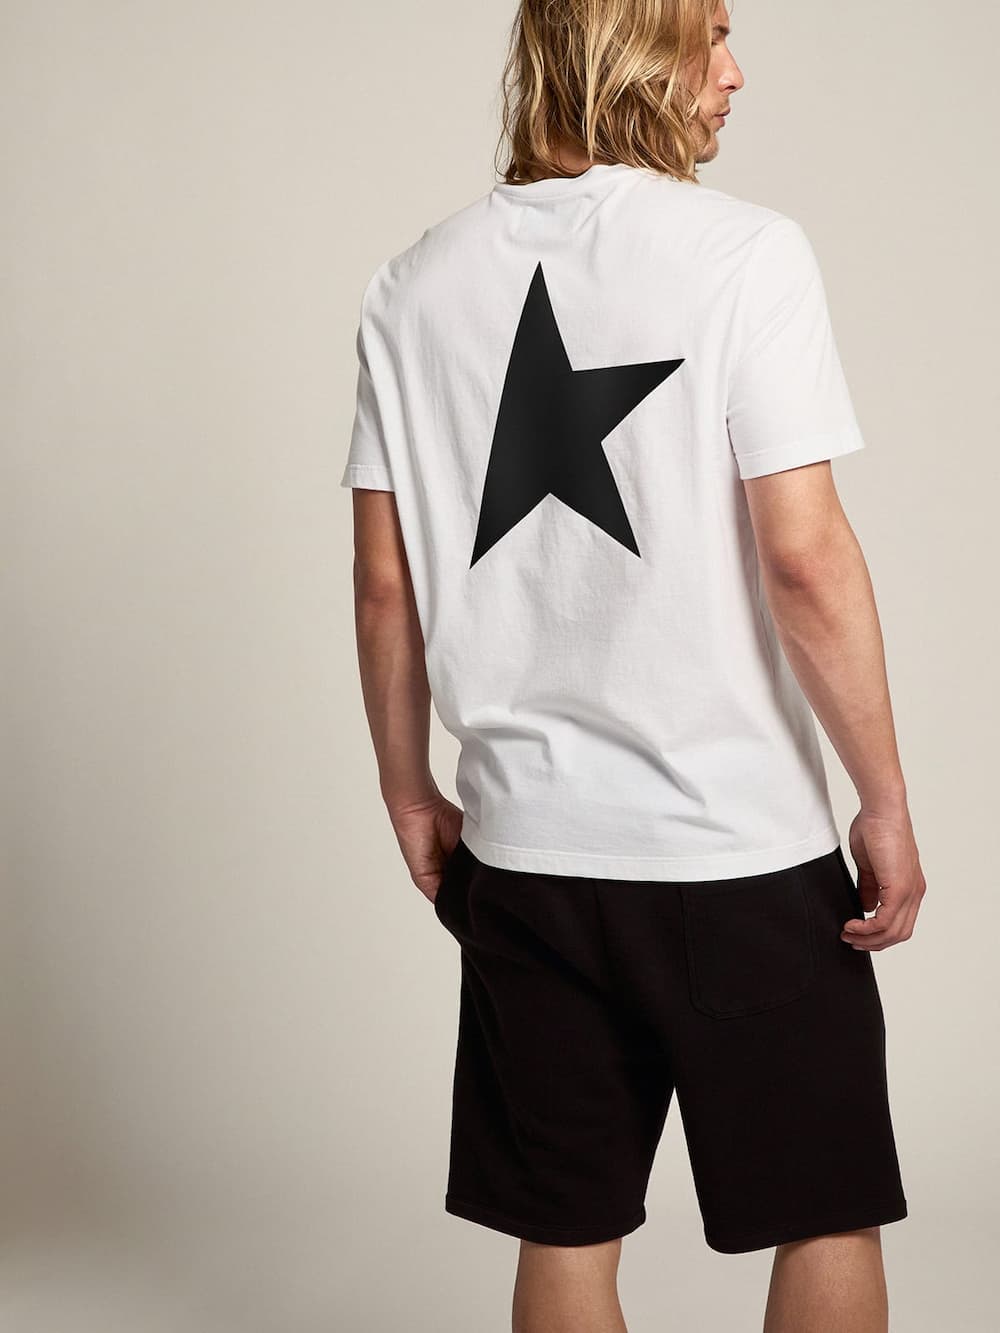 Golden Goose - T-shirt blanc collection Star avec logo et étoile noirs contrastés in 